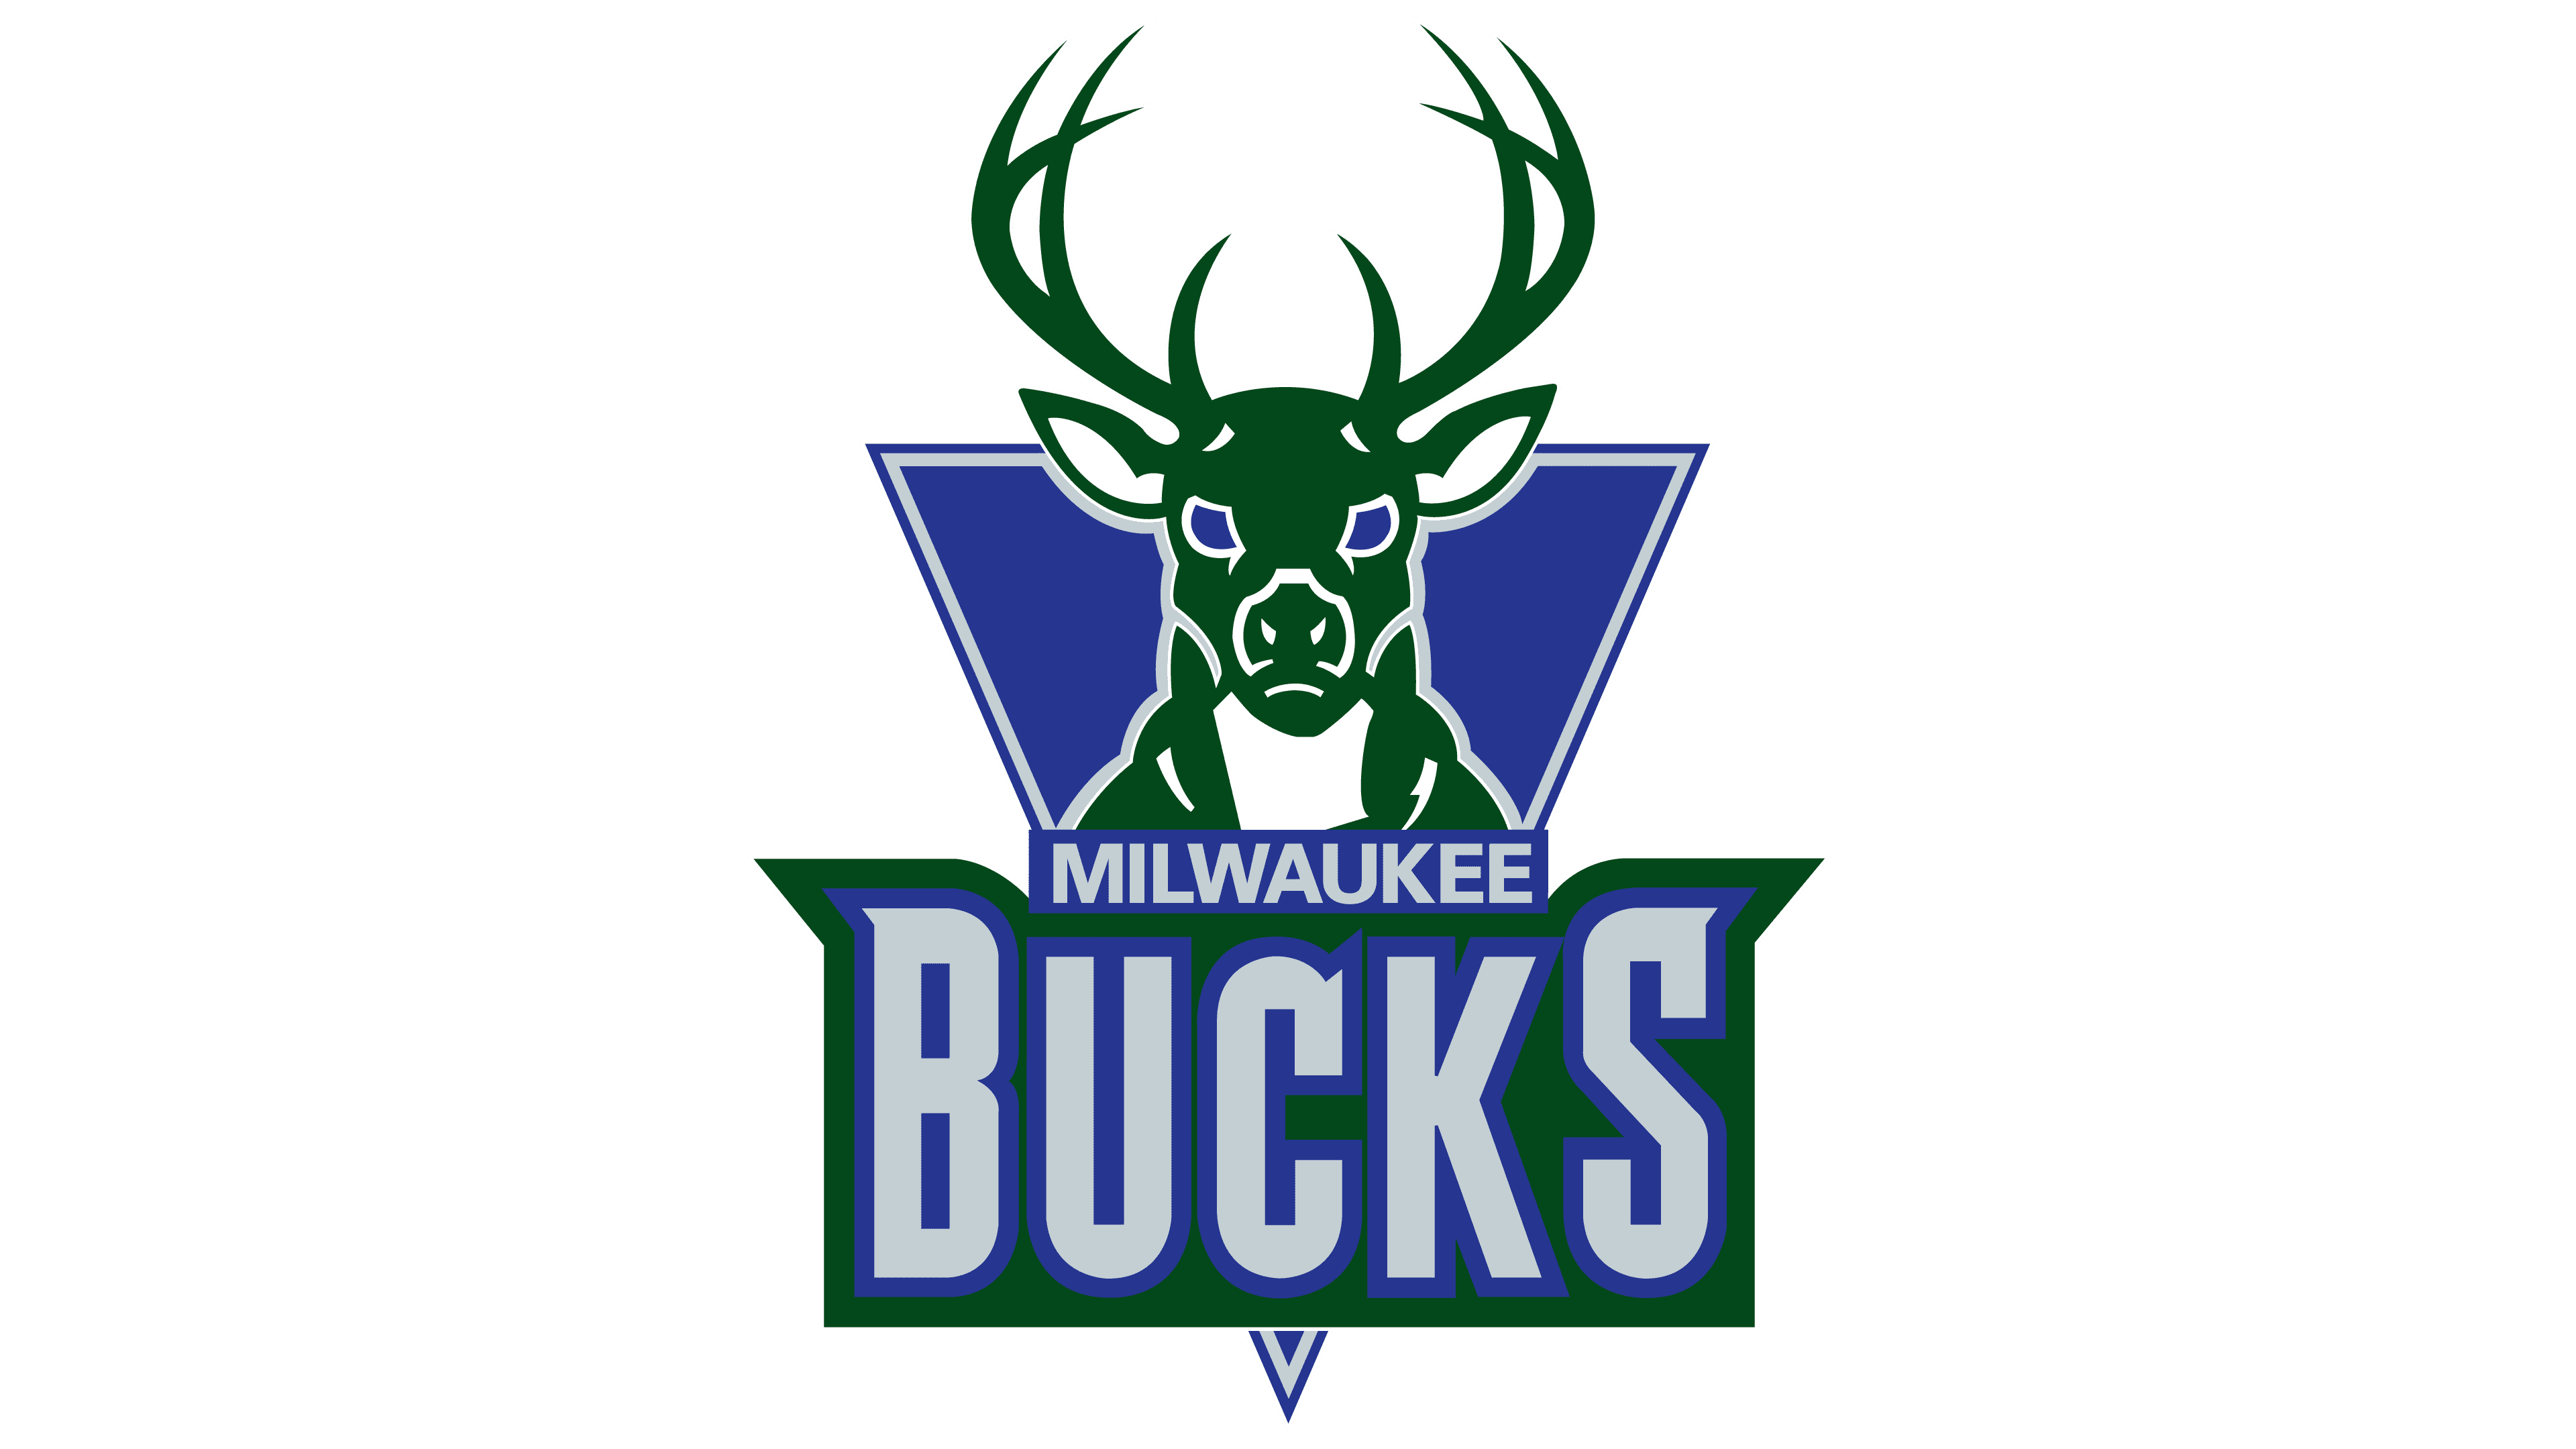 https://1000logos.net/wp-content/uploads/2018/03/Milwaukee-Bucks-Logo-1993.png